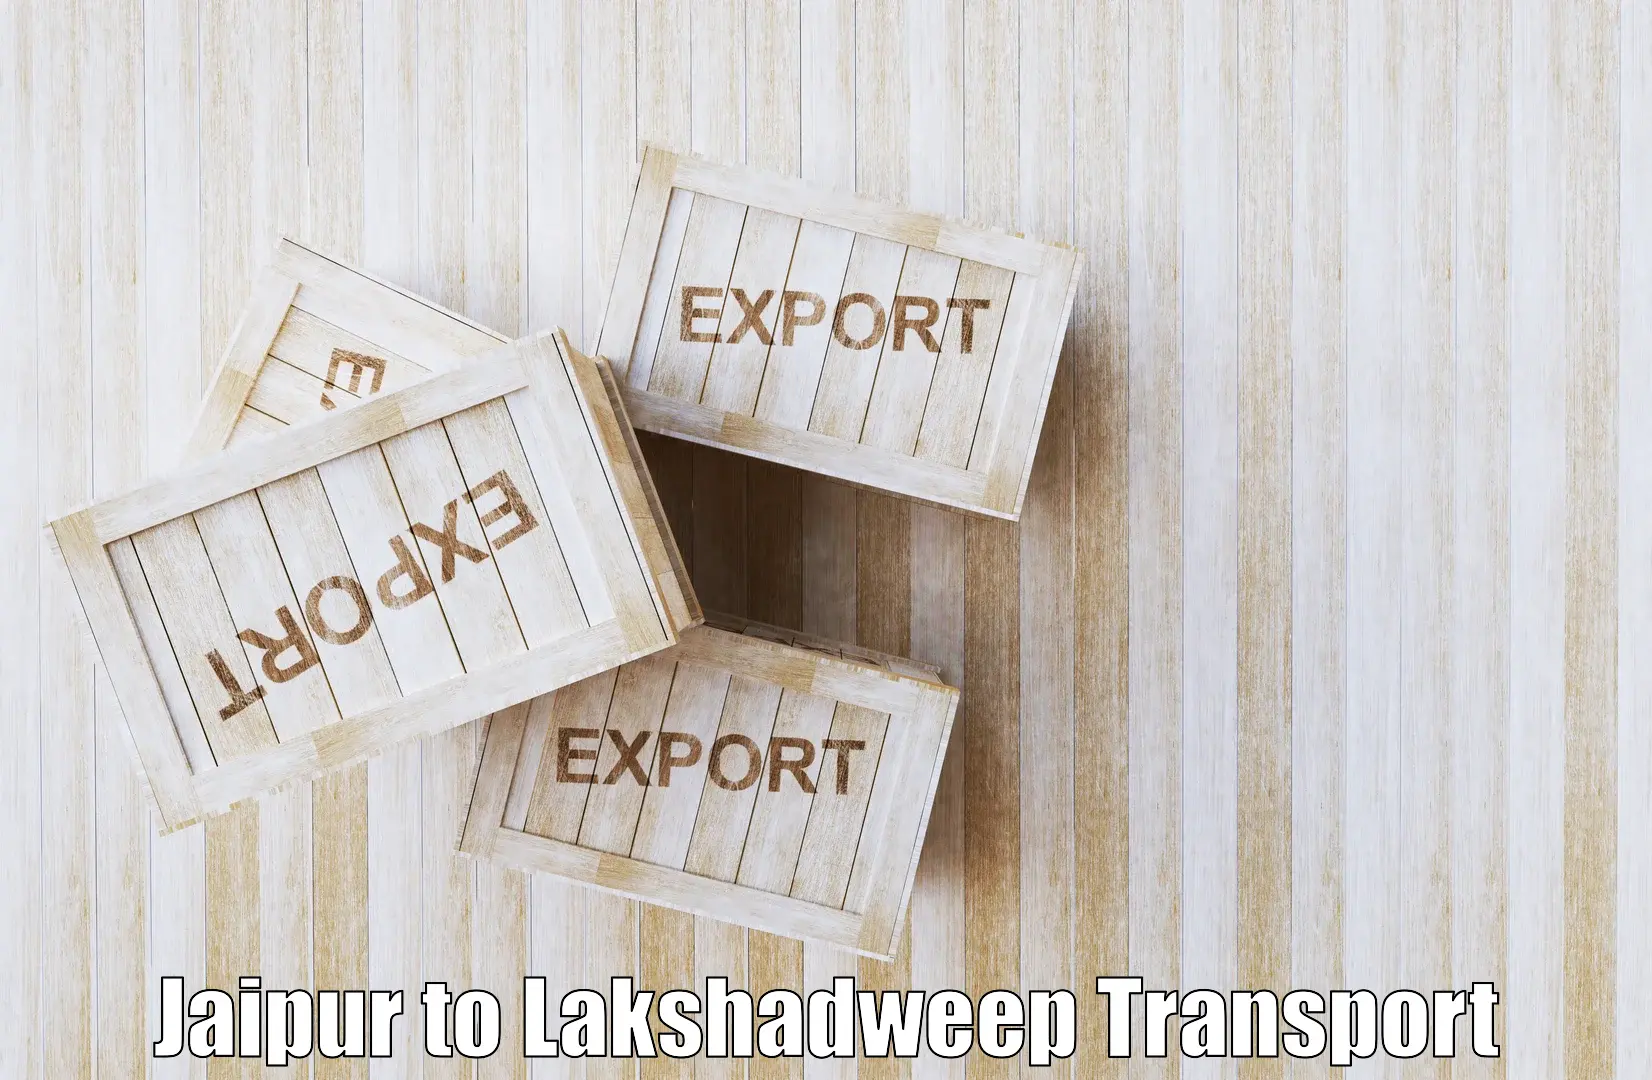 Bike transport service Jaipur to Lakshadweep